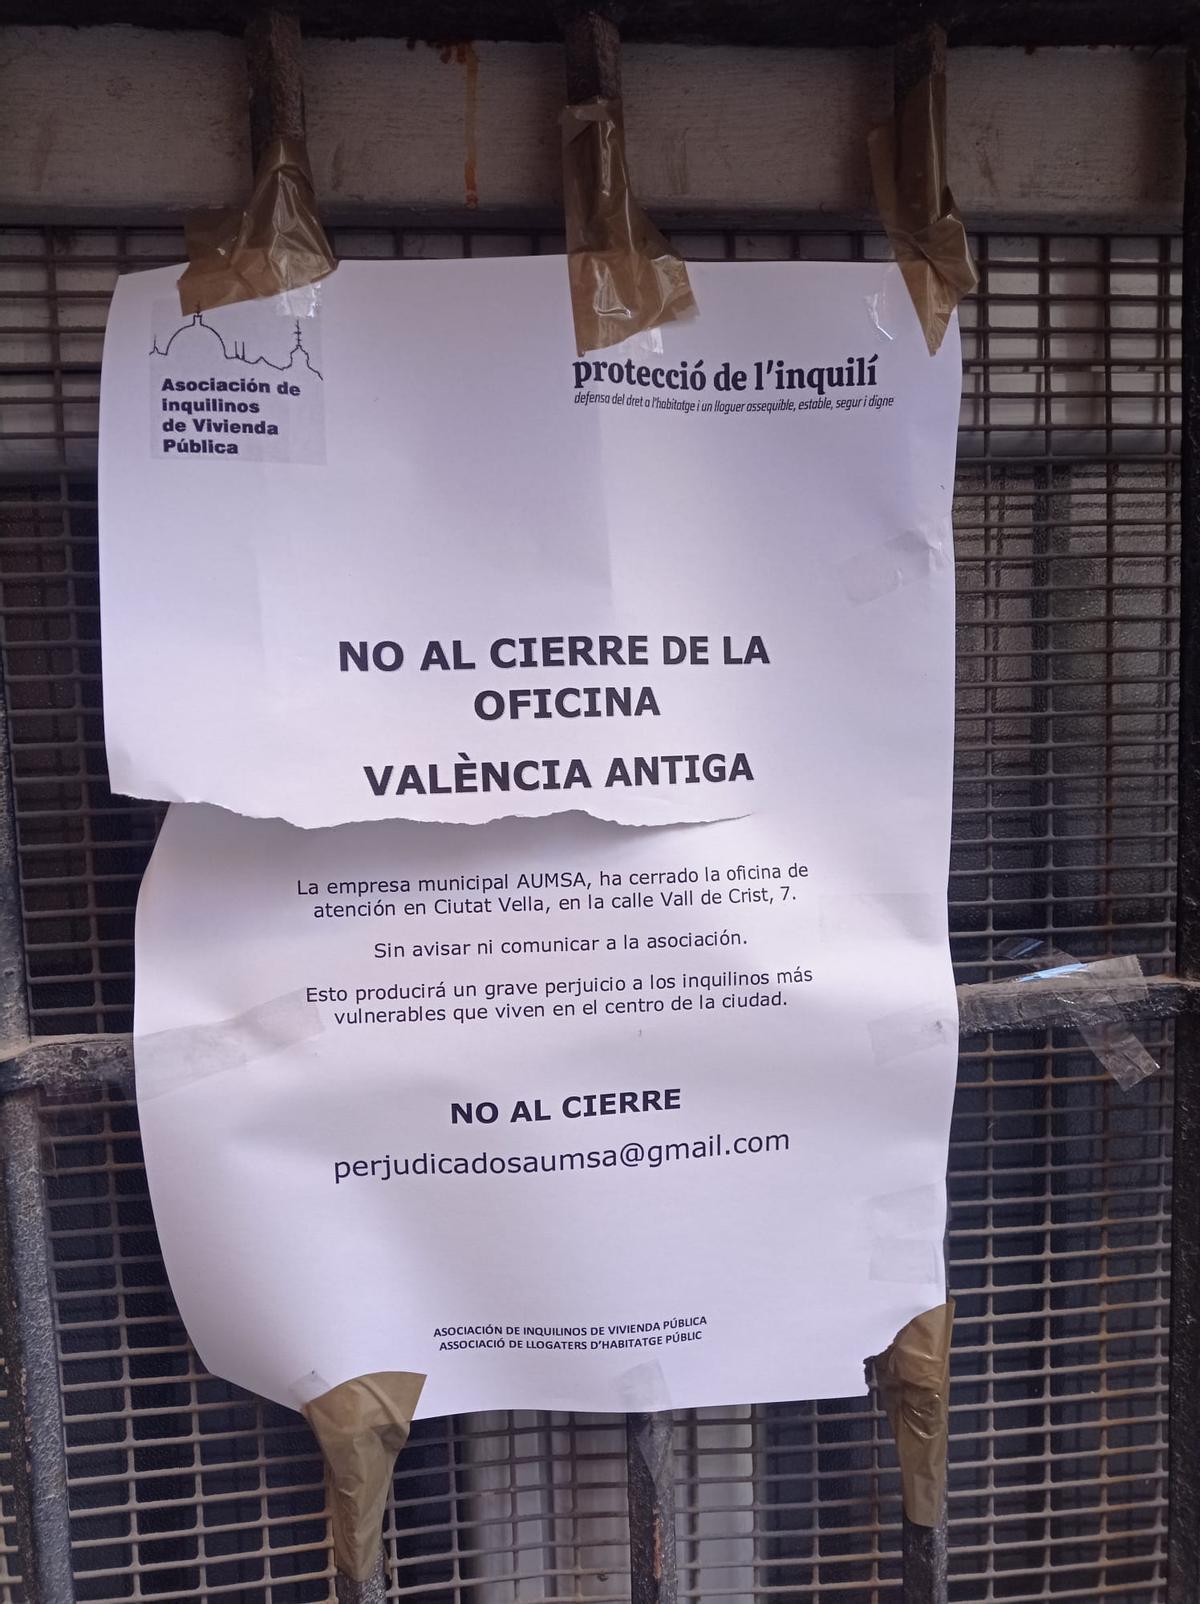 La asociación de inquilinos pide en Ciutat Vella que no se cierre su oficina